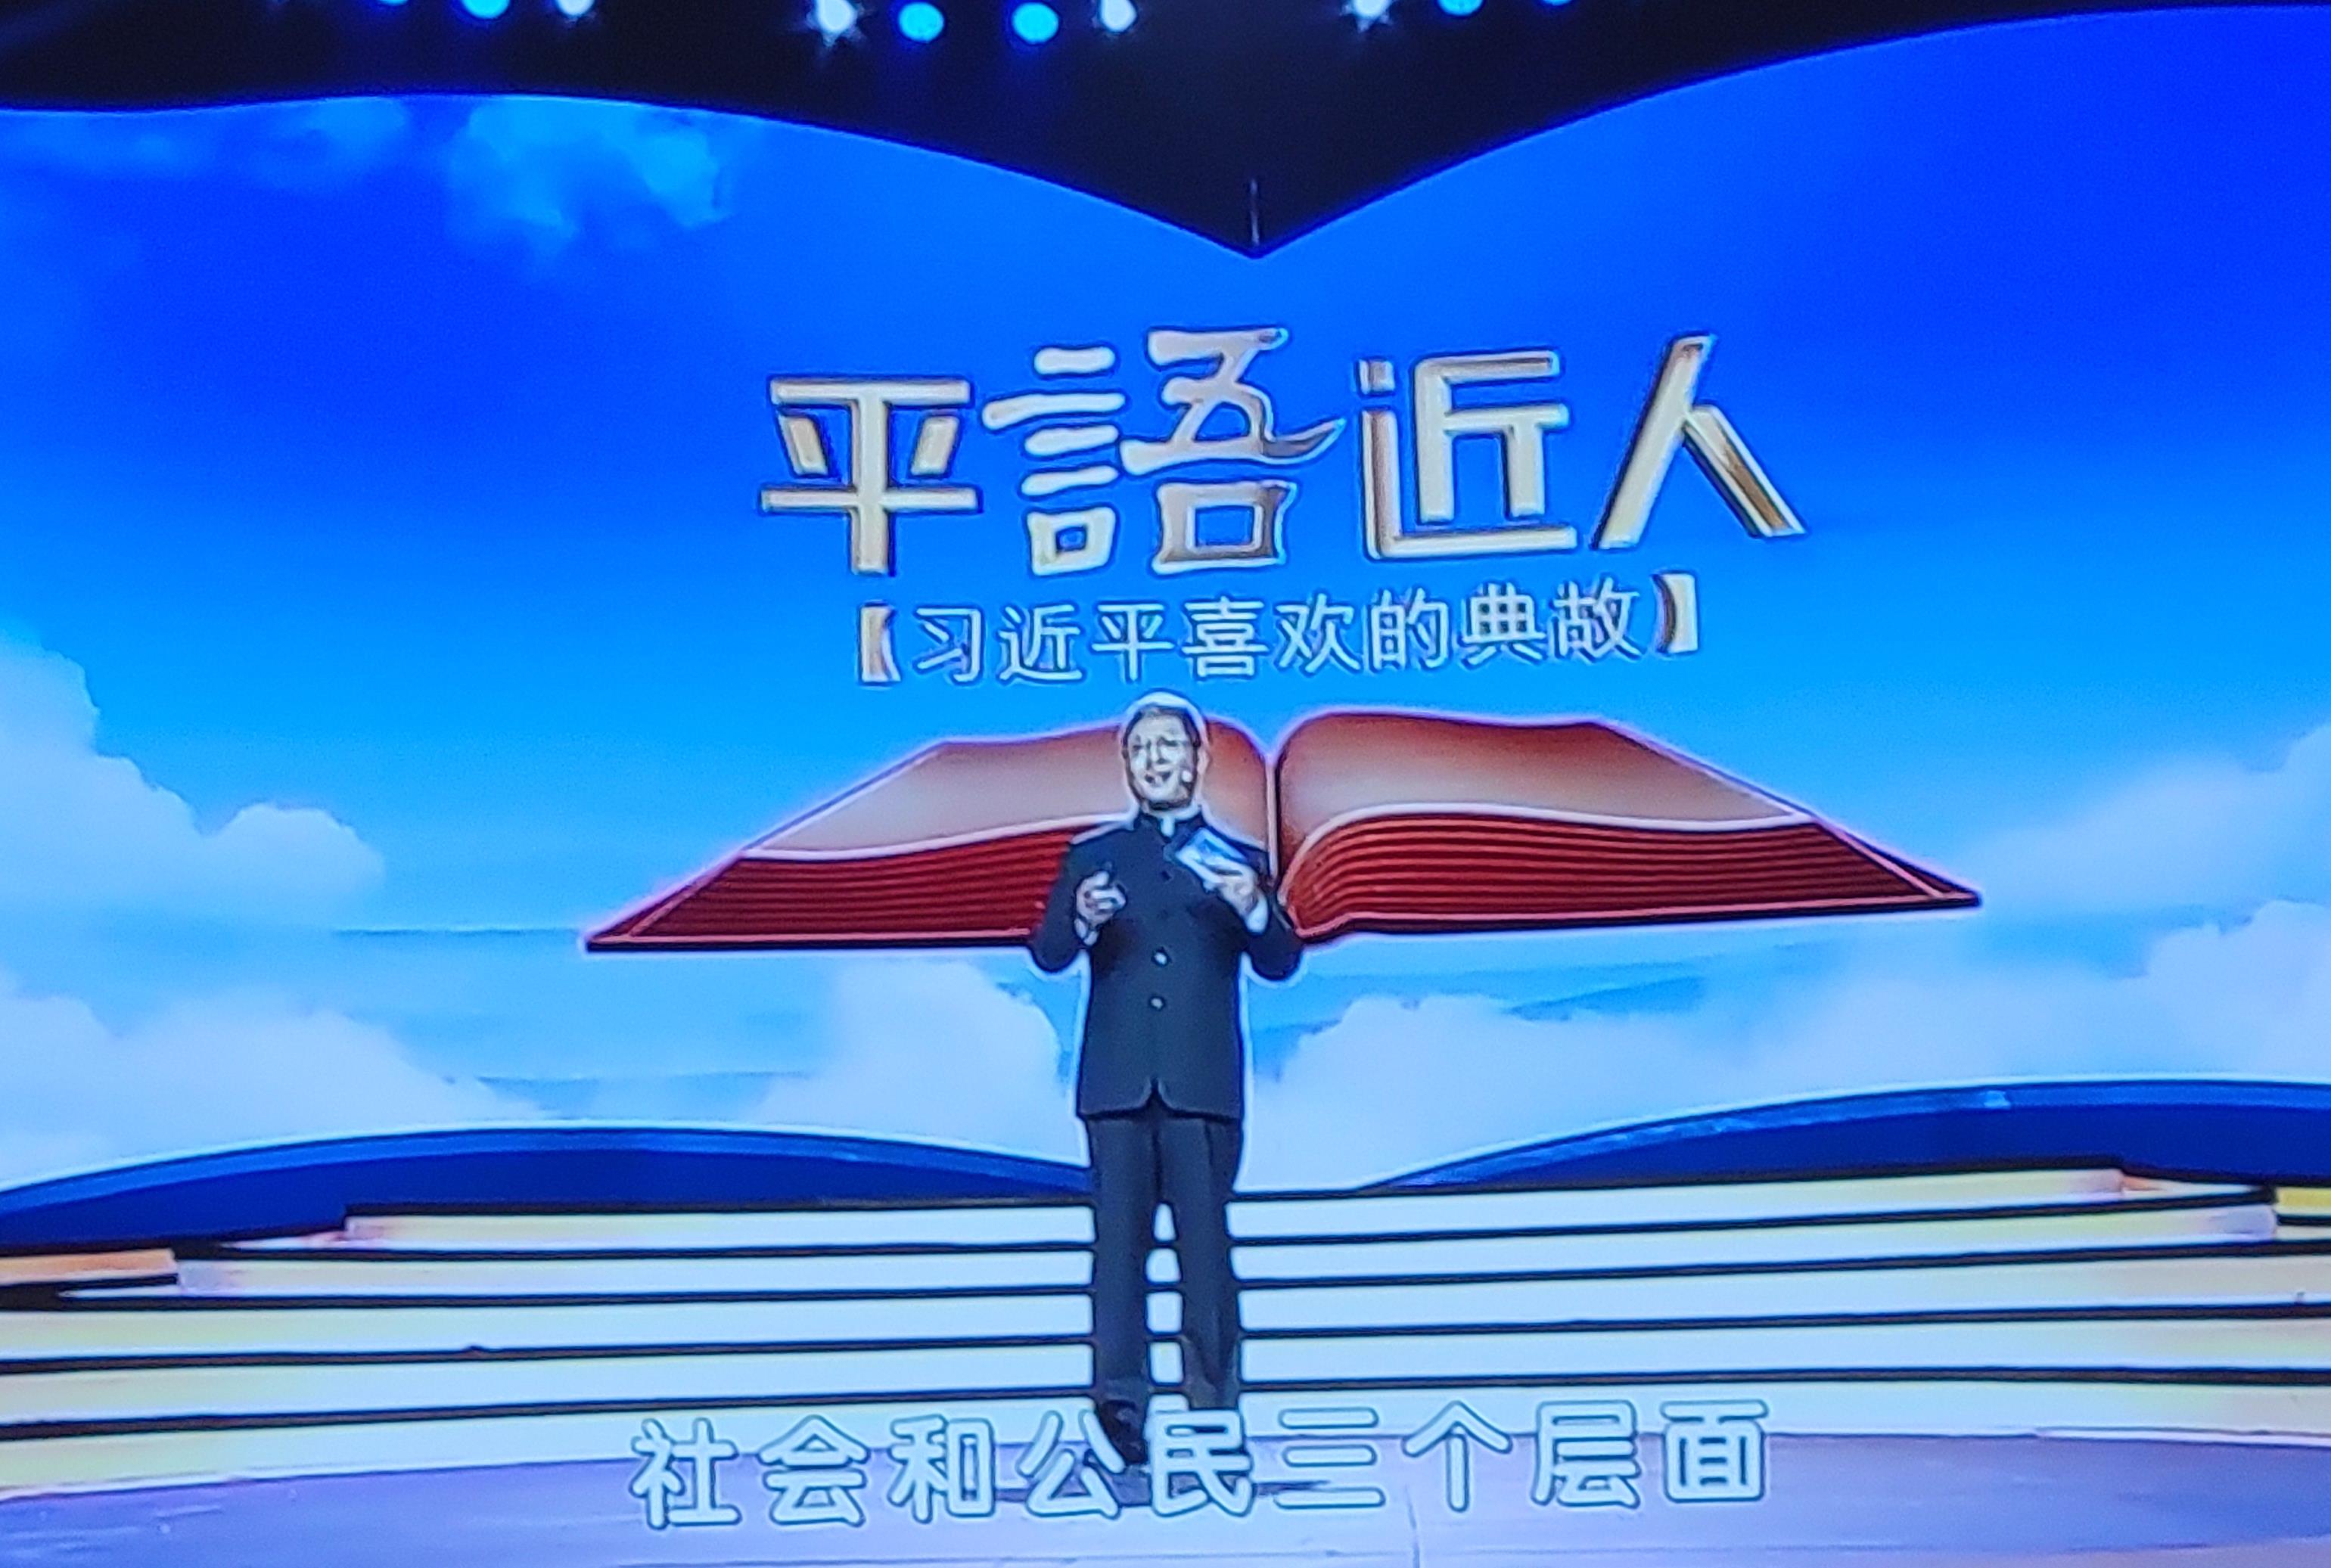 중국 관영 CCTV가 방송한 ‘평어근인’. 시진핑 주석의 연설, 담화 등에 담긴 고전, 고사를 소개한다. 프로그램 부제가 ‘시진핑이 좋아하는 고사’다. (사진=CCTV 캡쳐)